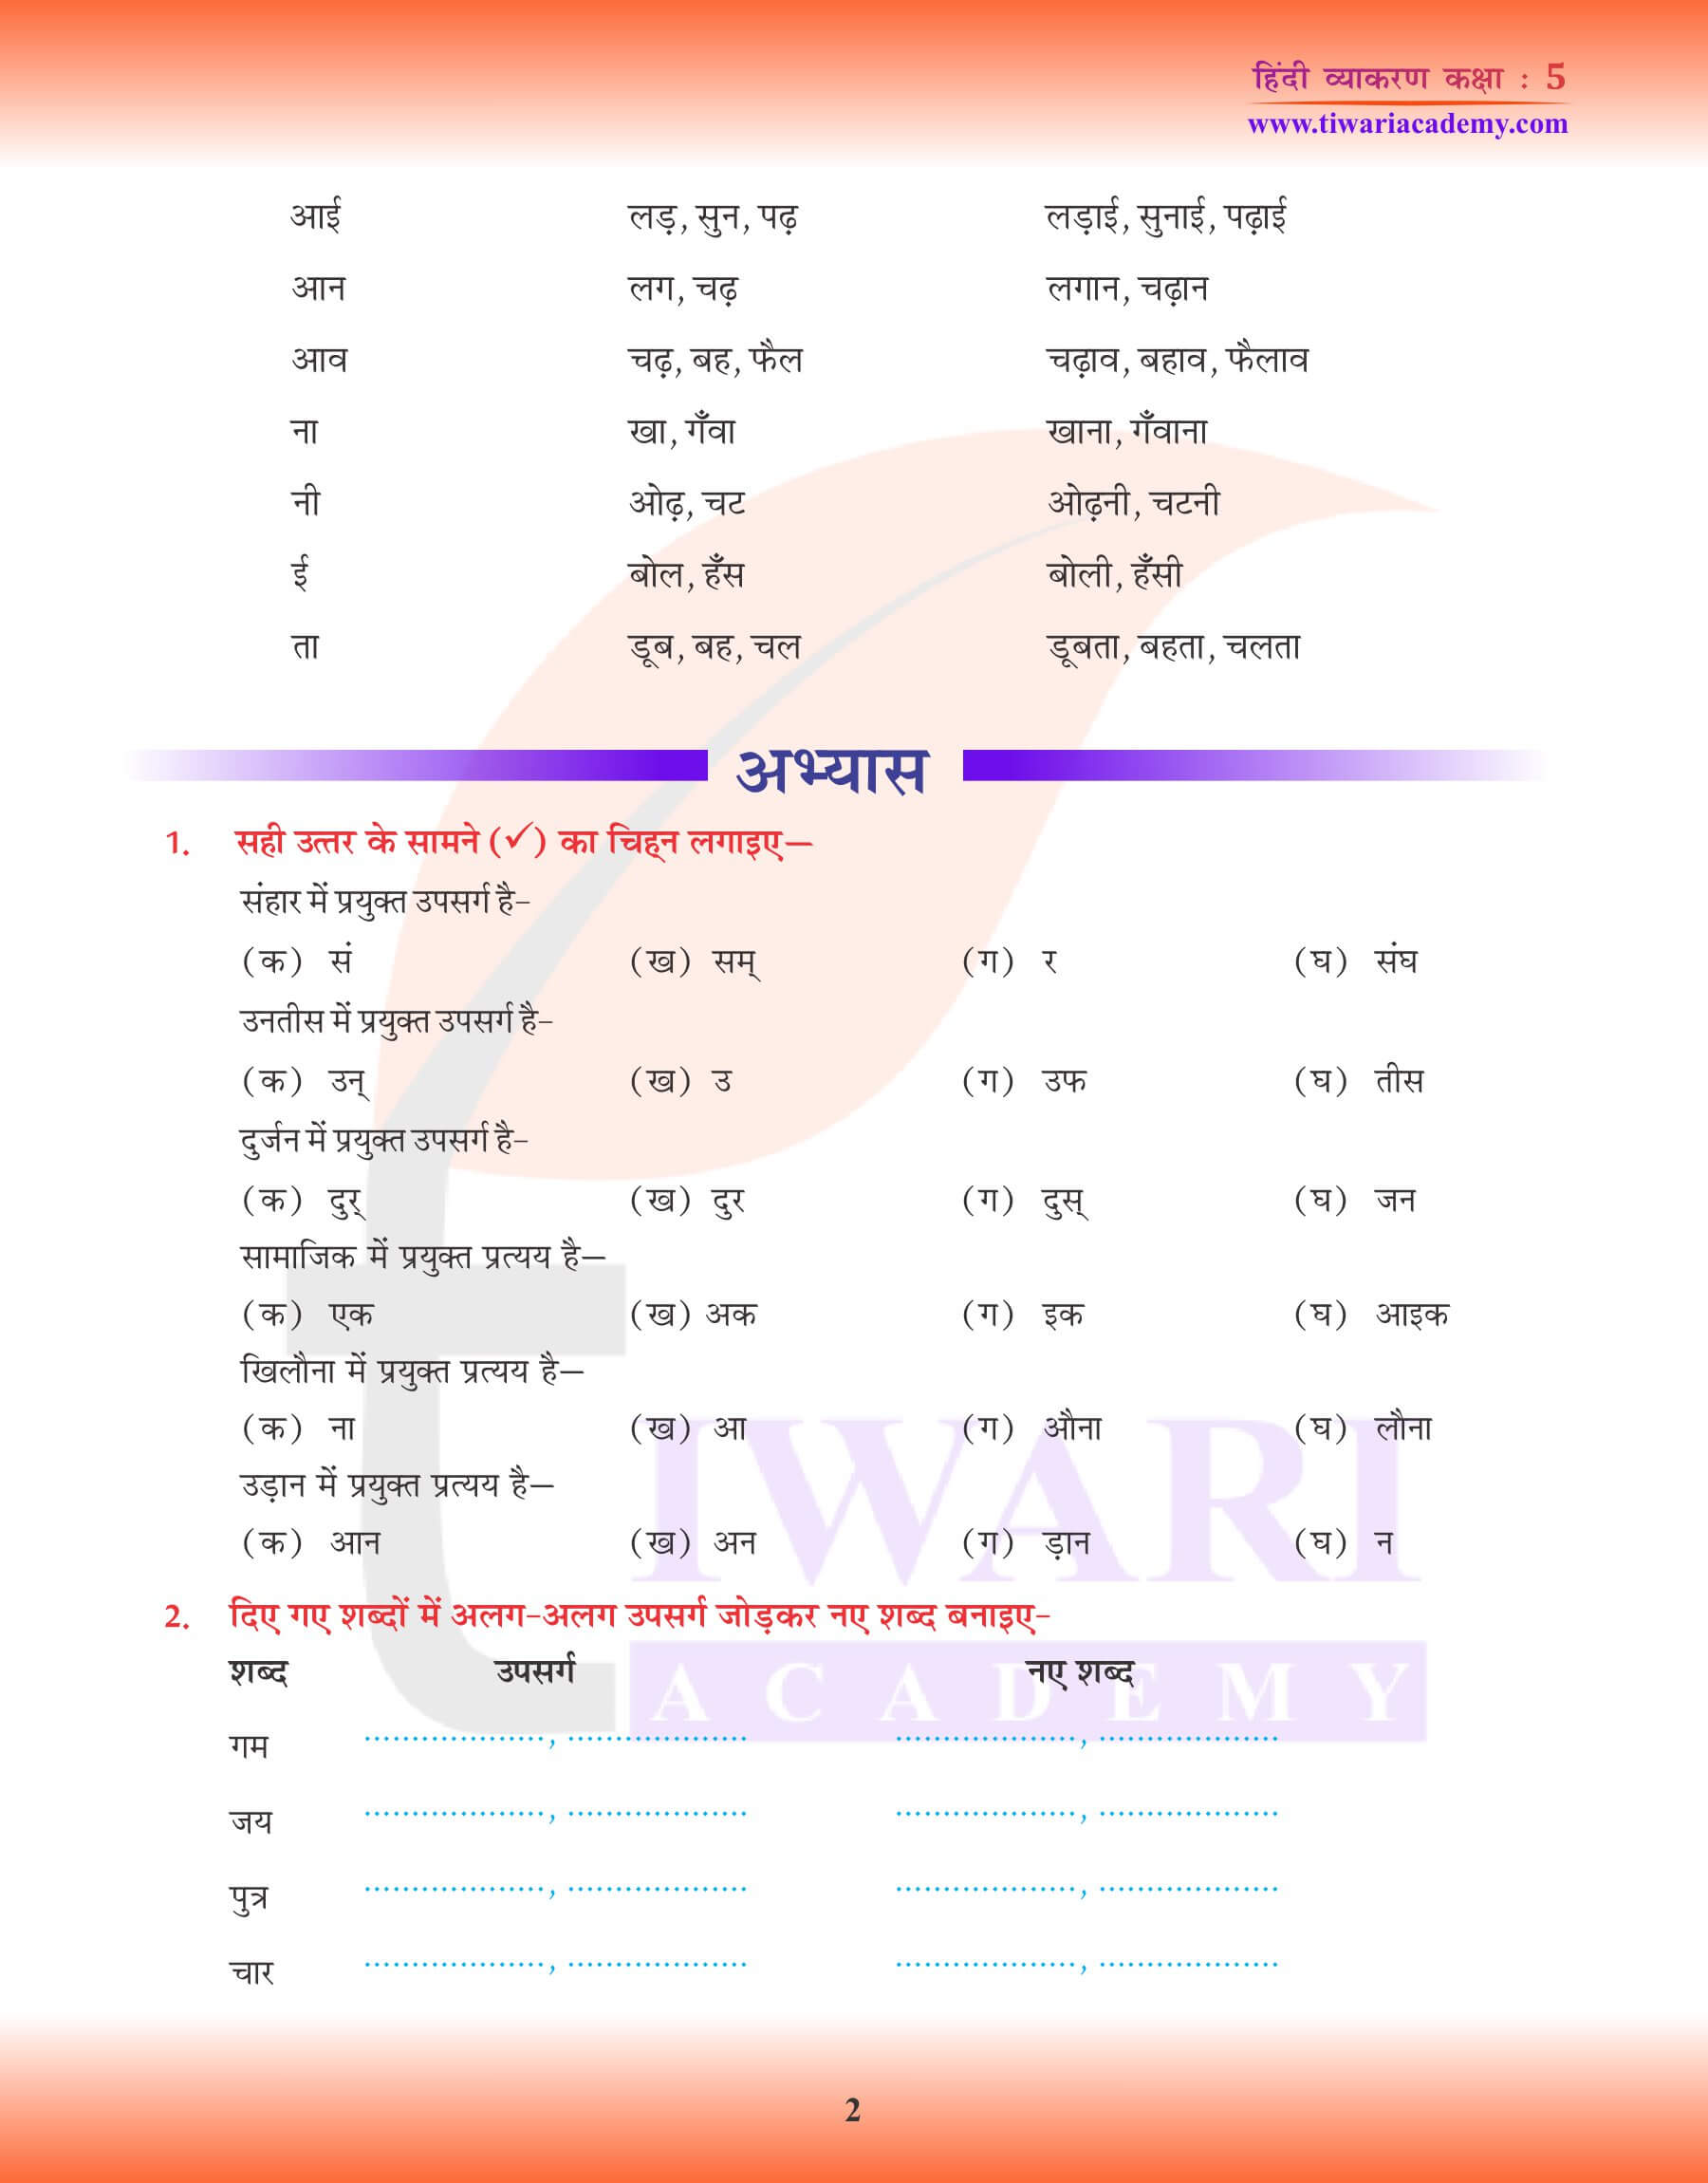 कक्षा 5 हिंदी व्याकरण में शब्द निर्माण का अध्ययन